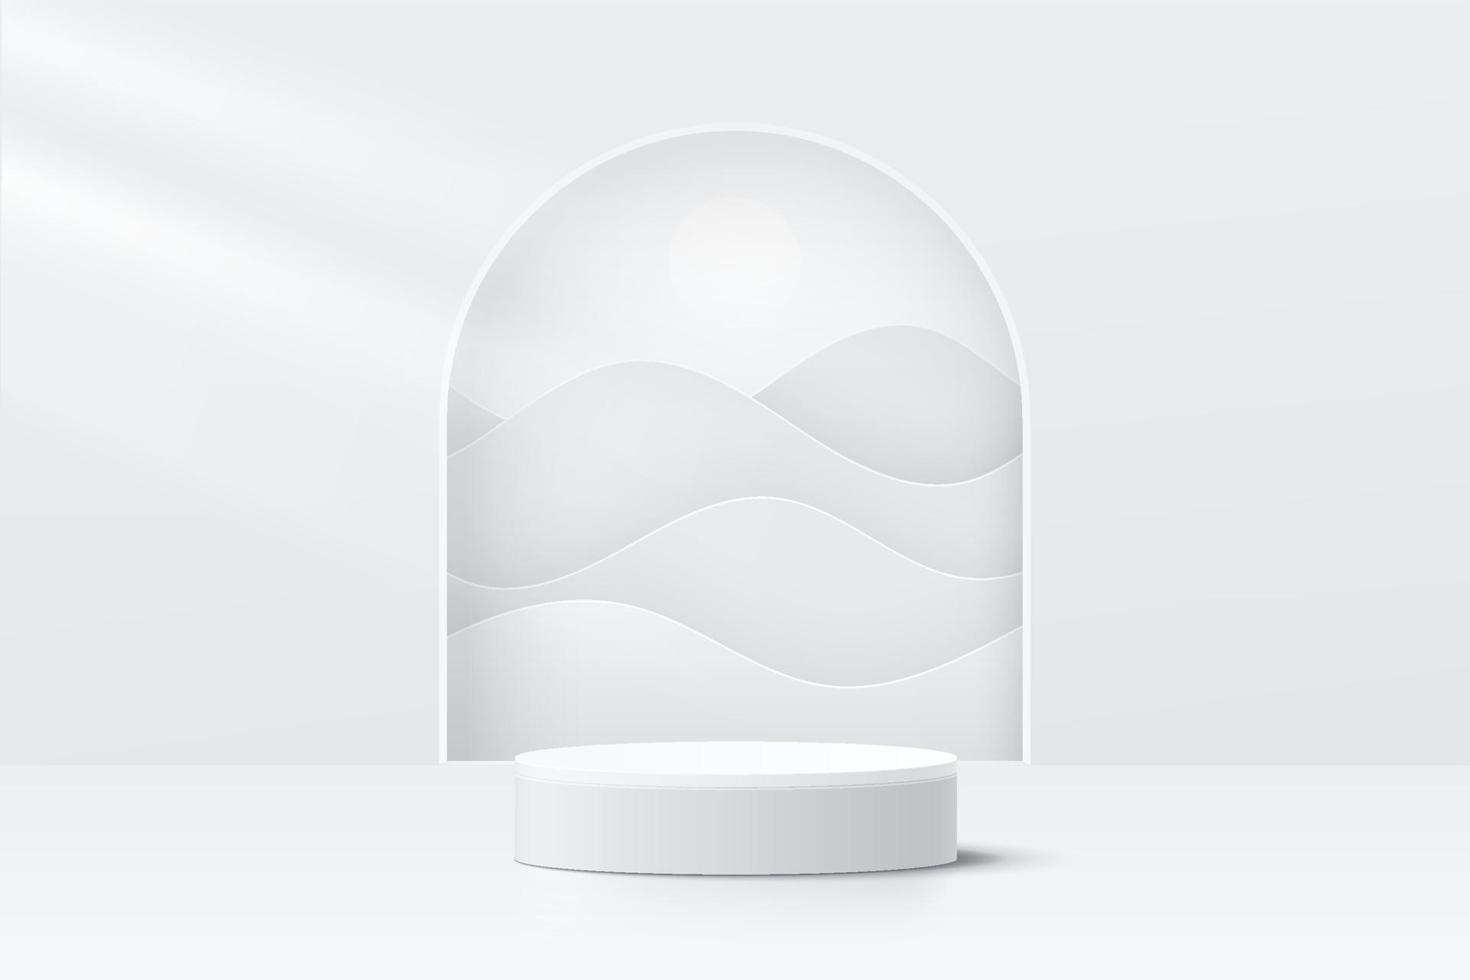 sala 3d abstrata com pódio de pedestal de cilindro branco realista e camadas onduladas na janela em forma de arco. cena mínima para apresentação de exibição do produto. projeto de plataforma geométrica vetorial. vitrine de palco. vetor